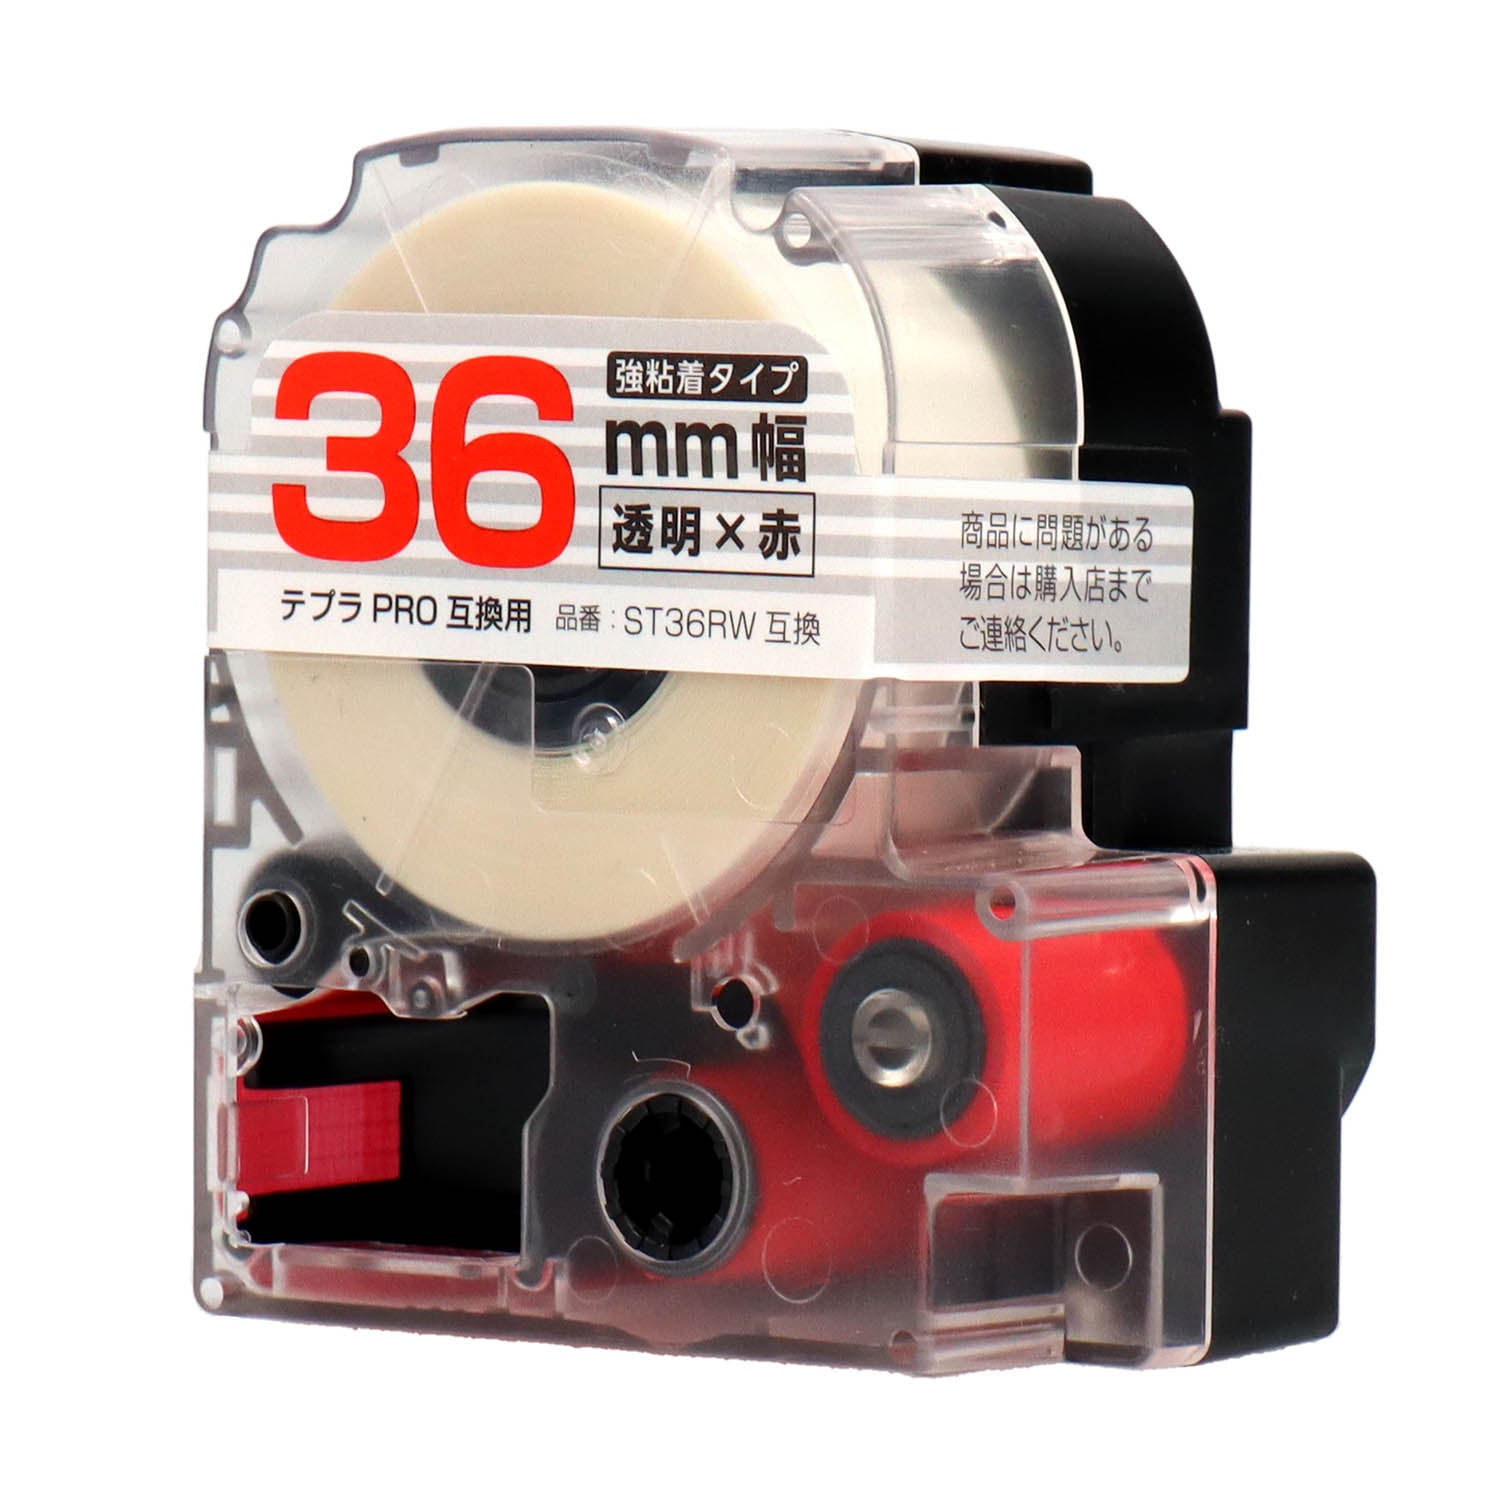 テプラPRO用互換テープカートリッジ 透明×赤文字 36mm